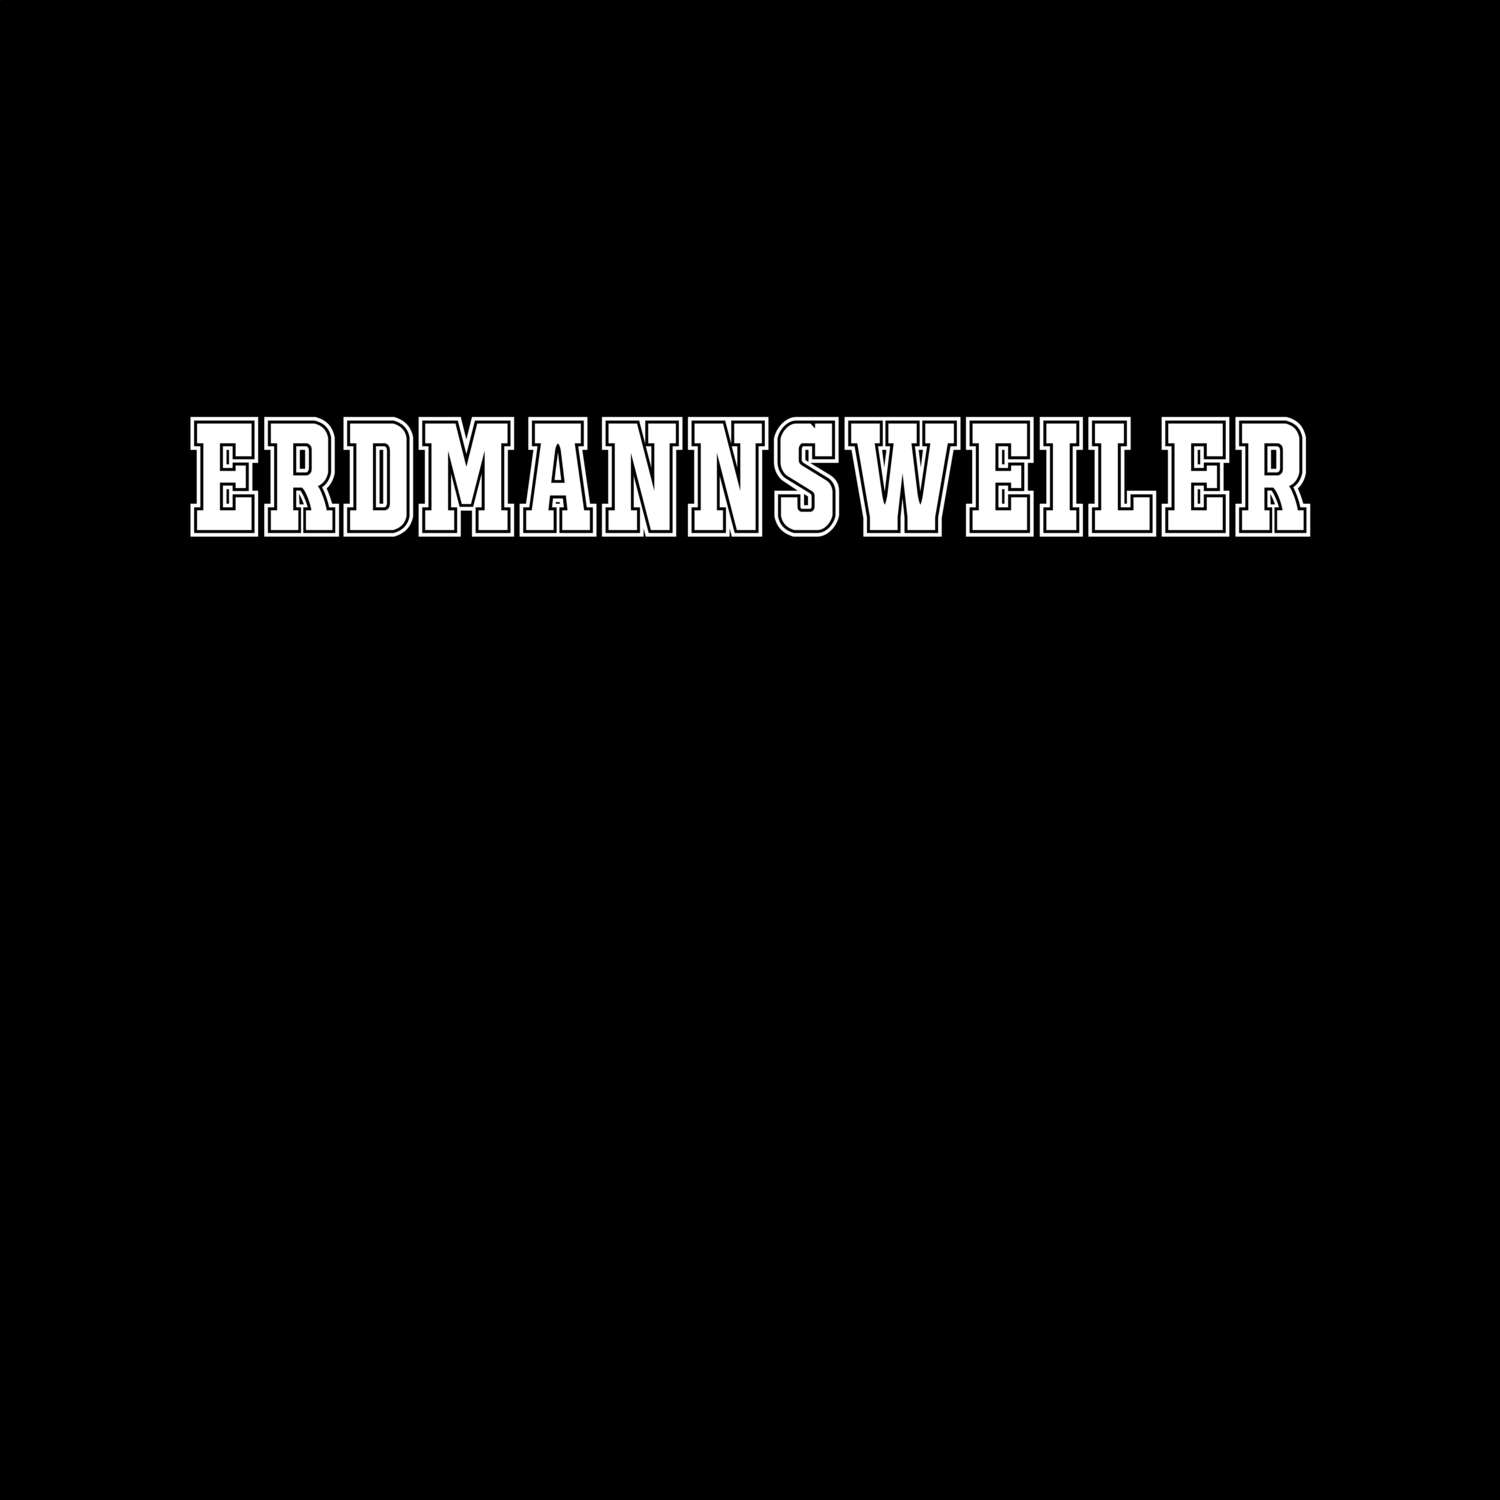 Erdmannsweiler T-Shirt »Classic«